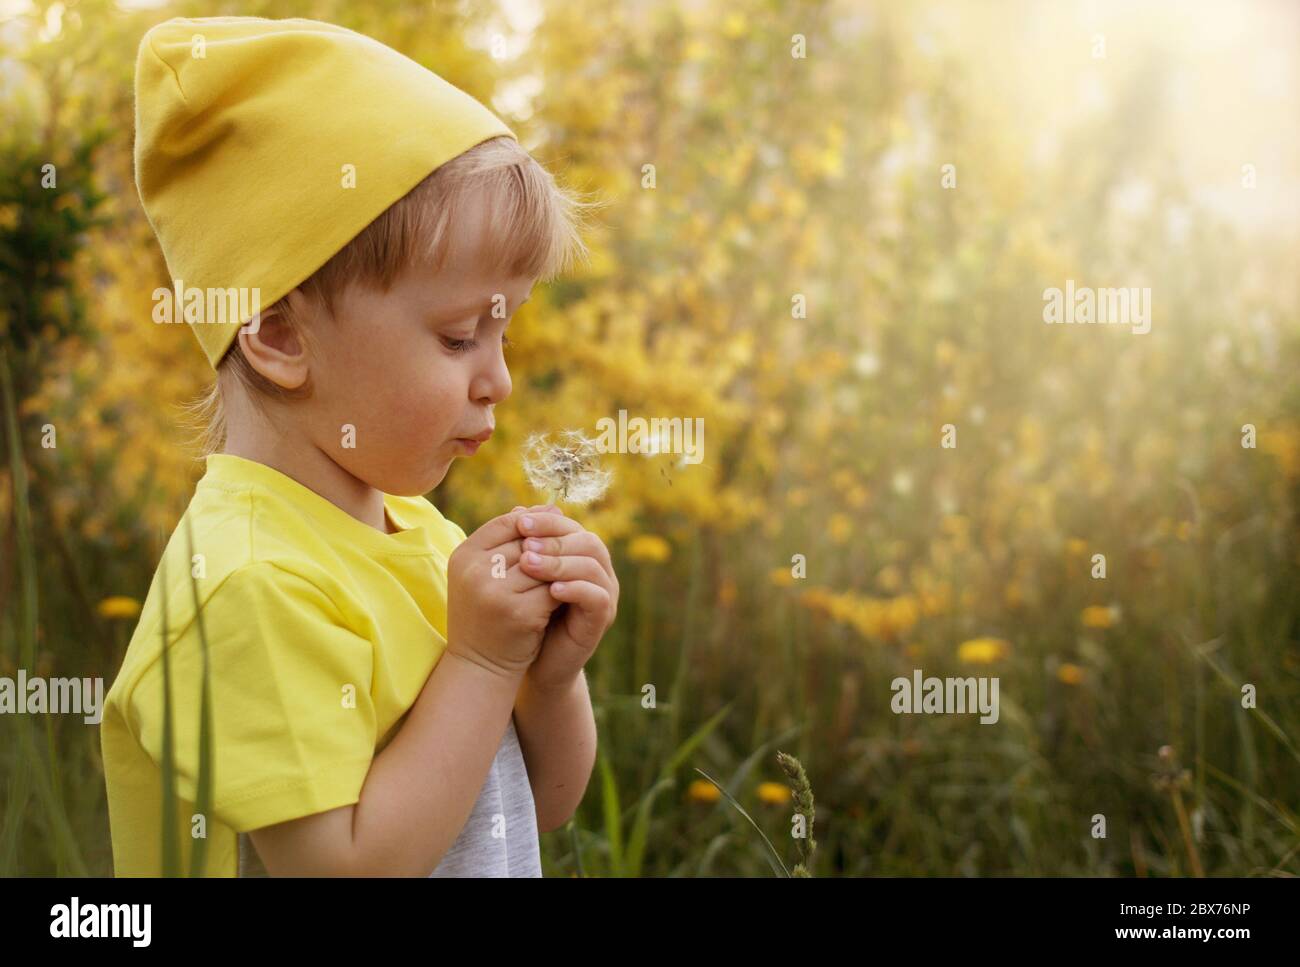 Das blonde Kind hält eine weiße Blume in seinen kleinen Händen, eine sonnige Stimmung und Zärtlichkeit Stockfoto